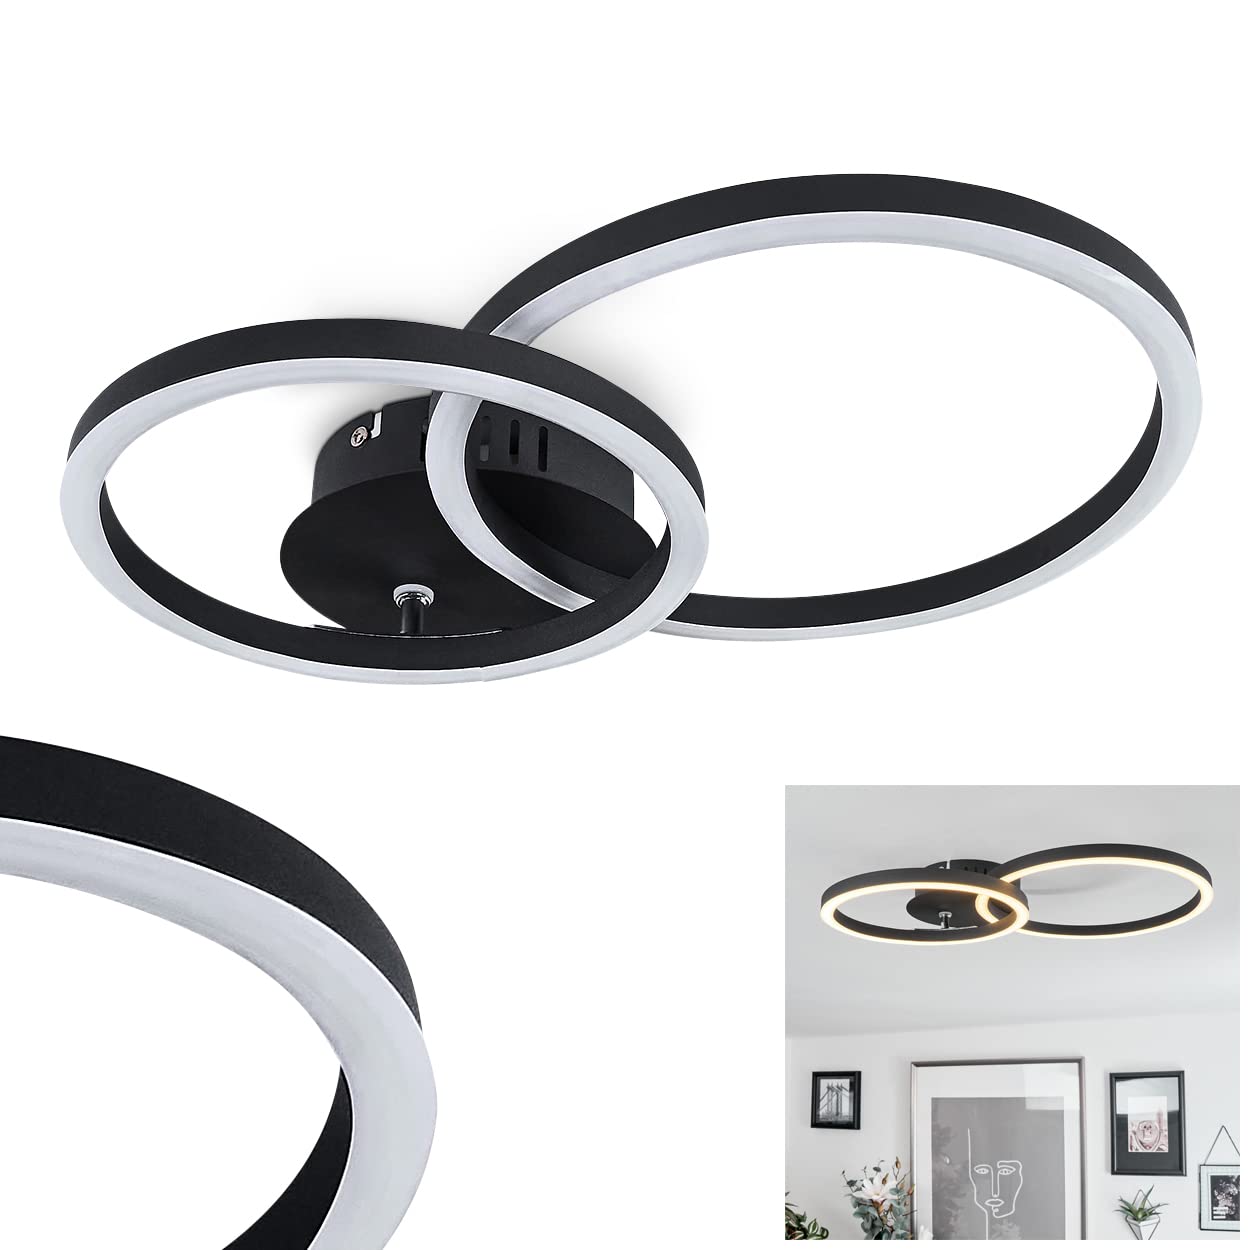 LED Deckenleuchte Malanje, moderne Deckenlampe aus Metall in schwarz/weiß Leuchte mit 2 Ringen, (1 verstellbar), 24 Watt, 1300 Lumen, Lichtfarbe 3000 Kelvin (warmweiß)